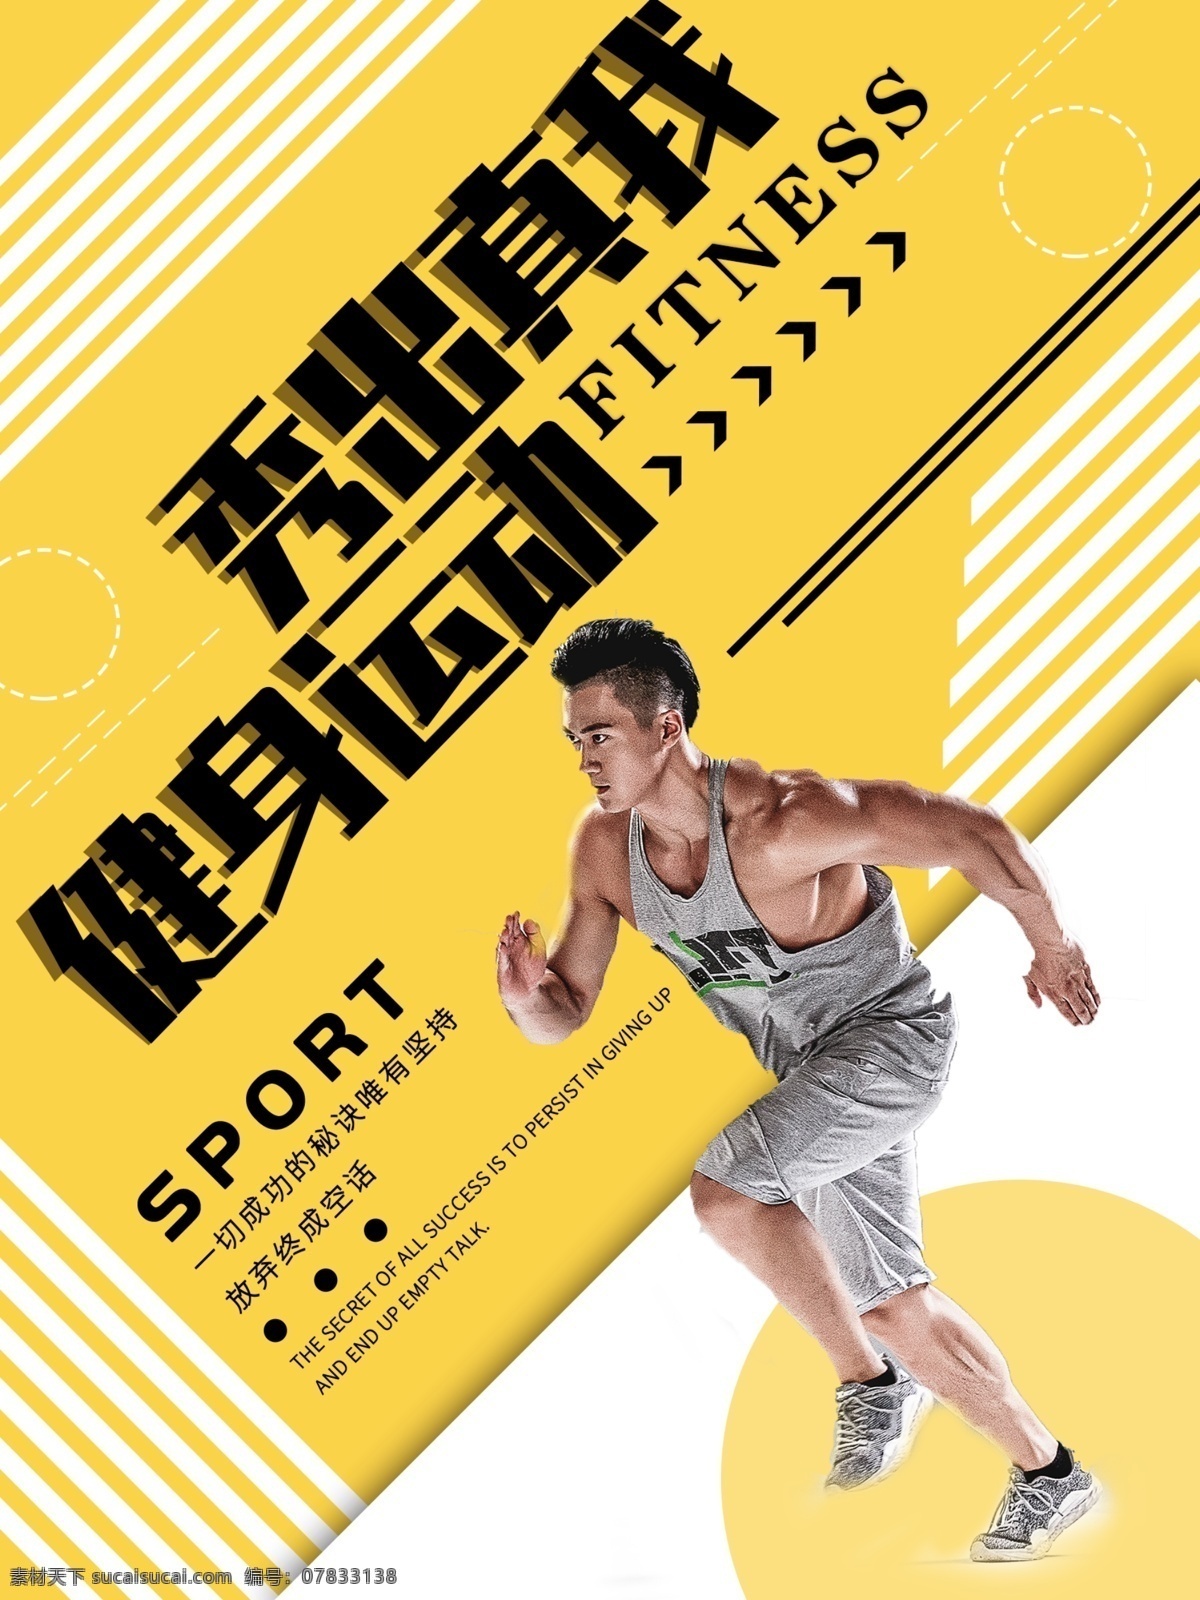 橙色 创意 简约 健身 运动 秀 出 真 海报 健身运动 健身海报 健身房 宣传海报